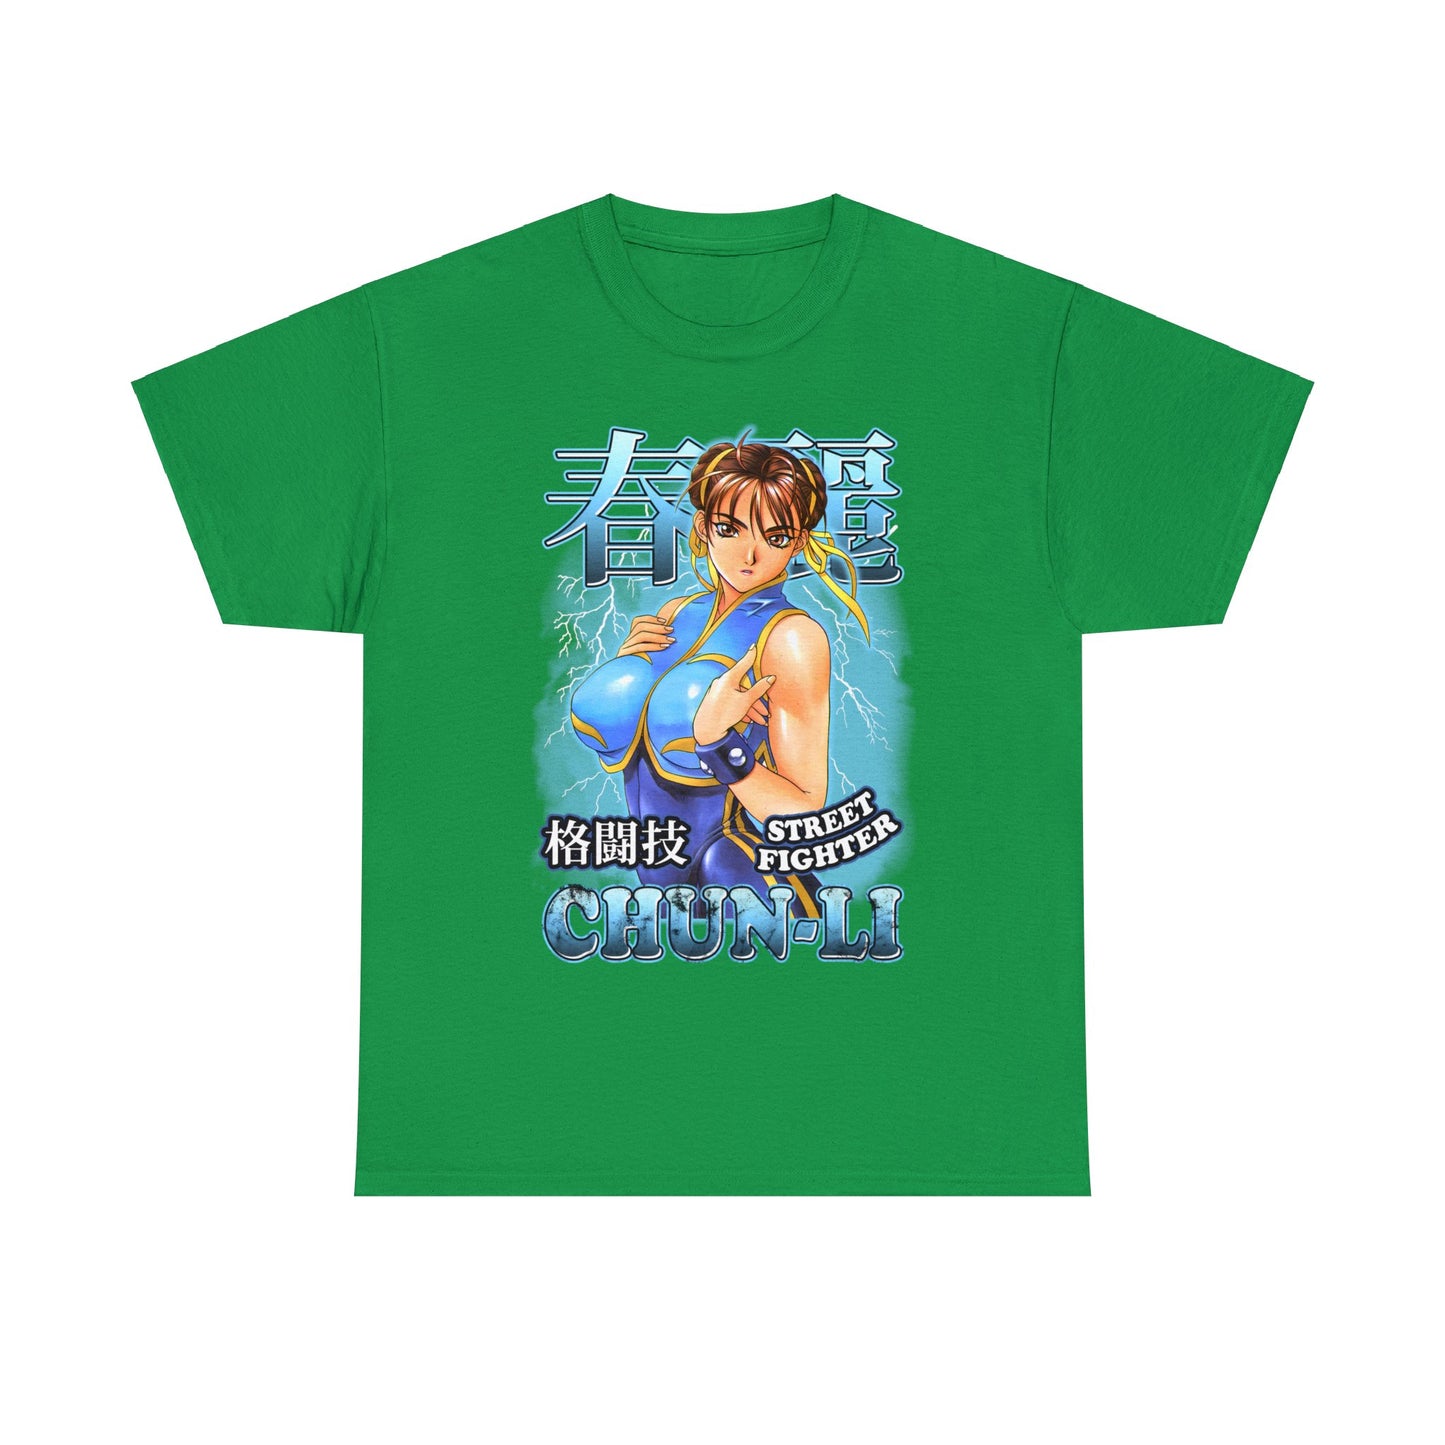 Street Fighter - Chun-Li Bootleg Shirt